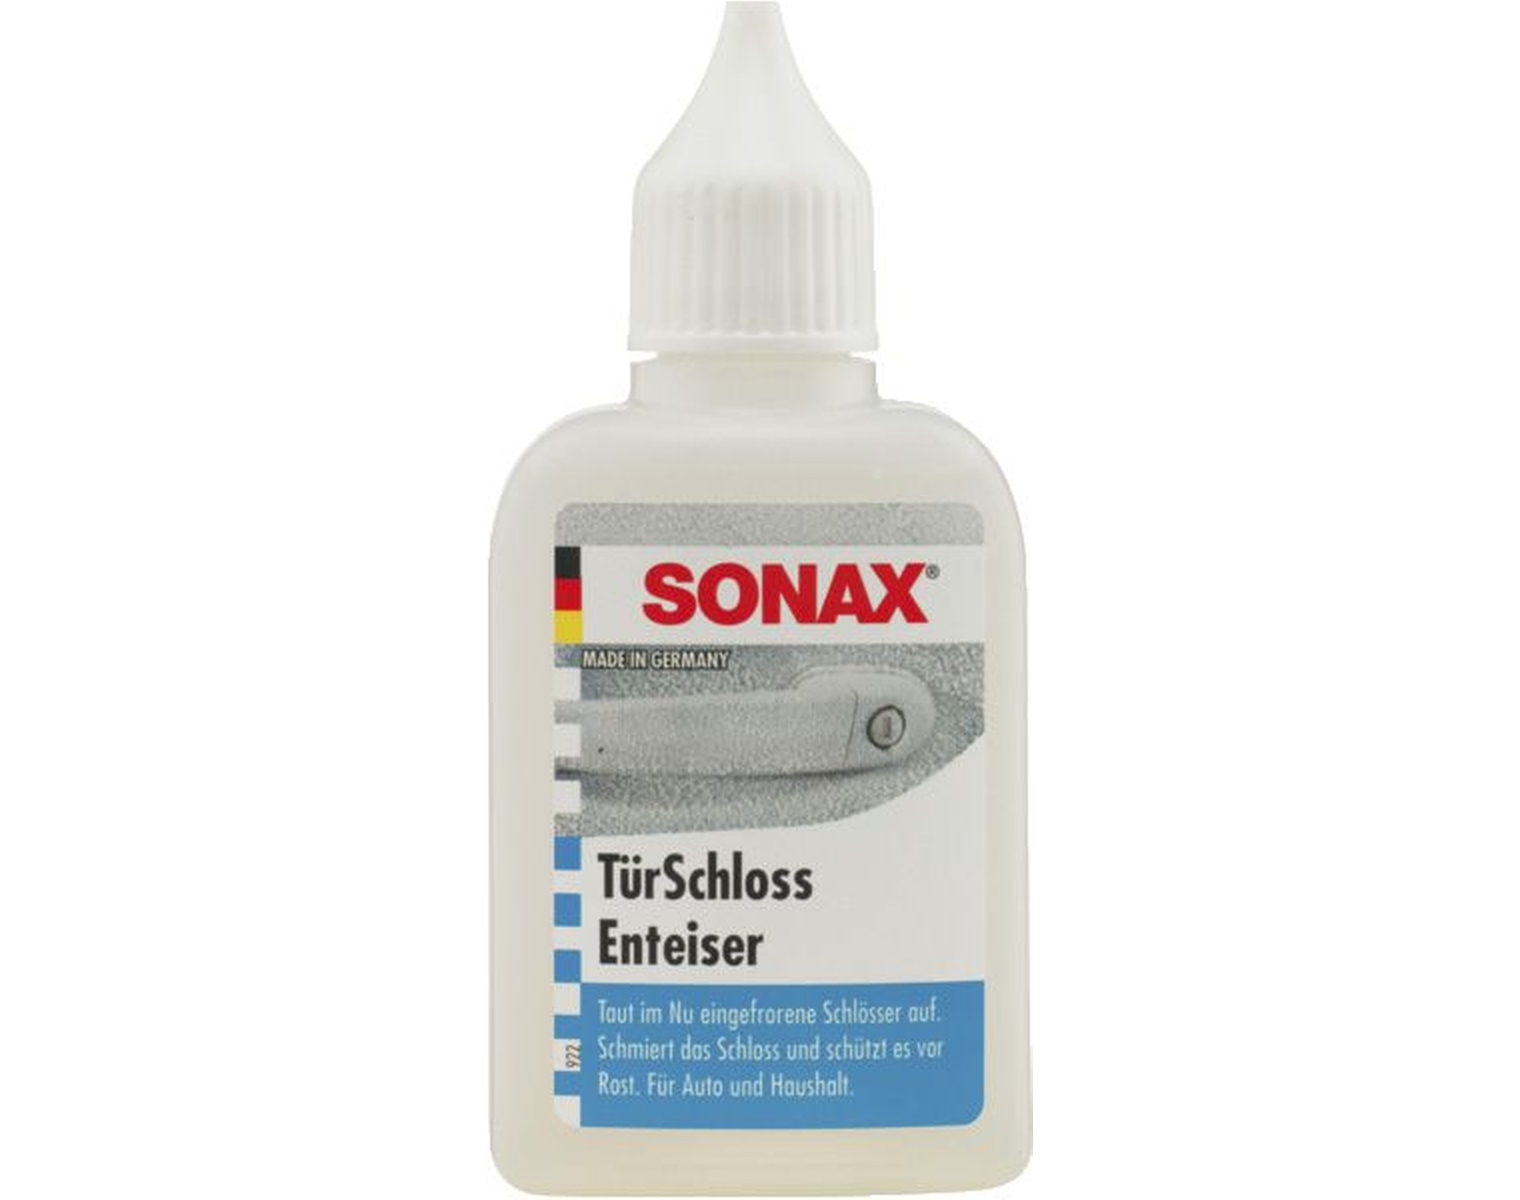 SONAX TürschlossEnteiser, Stück à 50 ml